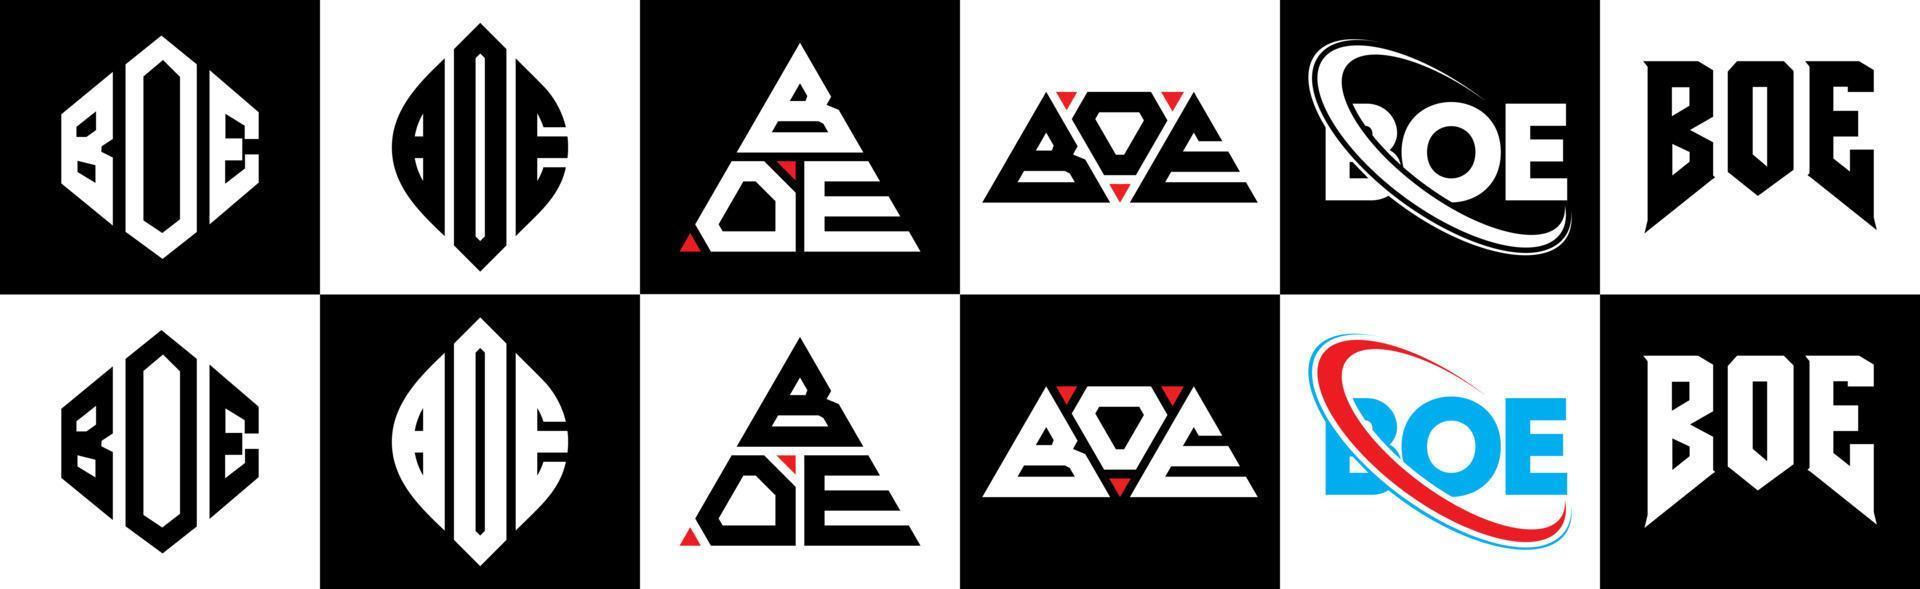 Boe-Buchstaben-Logo-Design in sechs Stilen. boe polygon, kreis, dreieck, sechseck, flacher und einfacher stil mit schwarz-weißem buchstabenlogo in einer zeichenfläche. Boe minimalistisches und klassisches Logo vektor